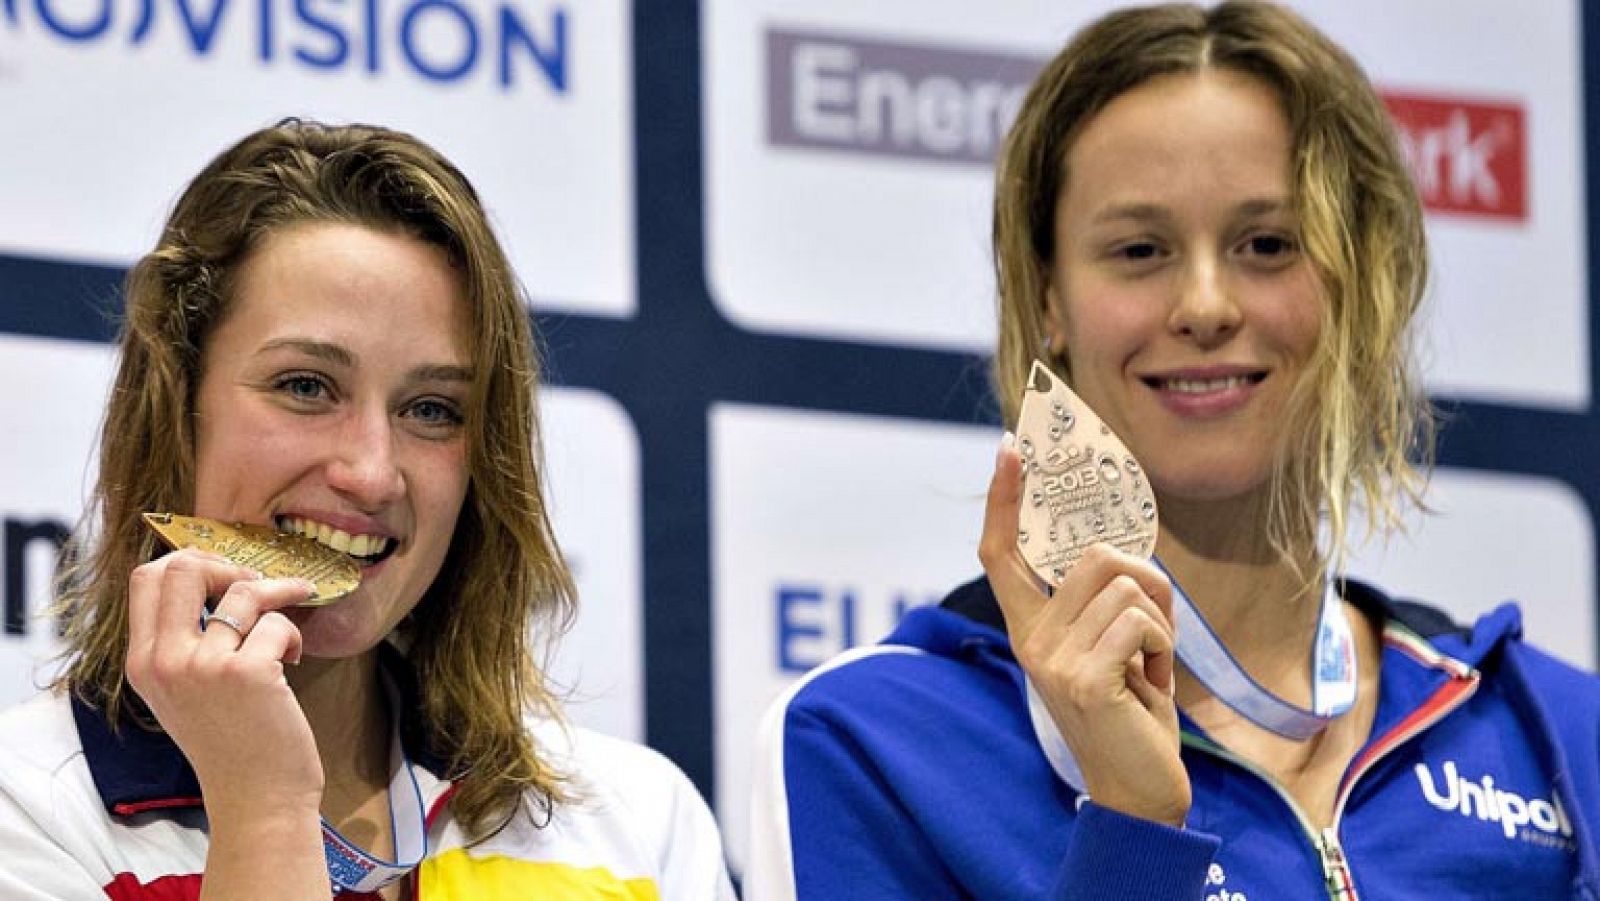 La española Mireia Belmonte ha ganado su tercera medalla de oro (3:56.14) en los Campeonatos de Europa de piscina corta, de 25 metros, al imponerse en la final de los 400 metros libre en Herning (Dinamarca). La otra finalista española, Melani Costa, fue sexta con 4;00.32.